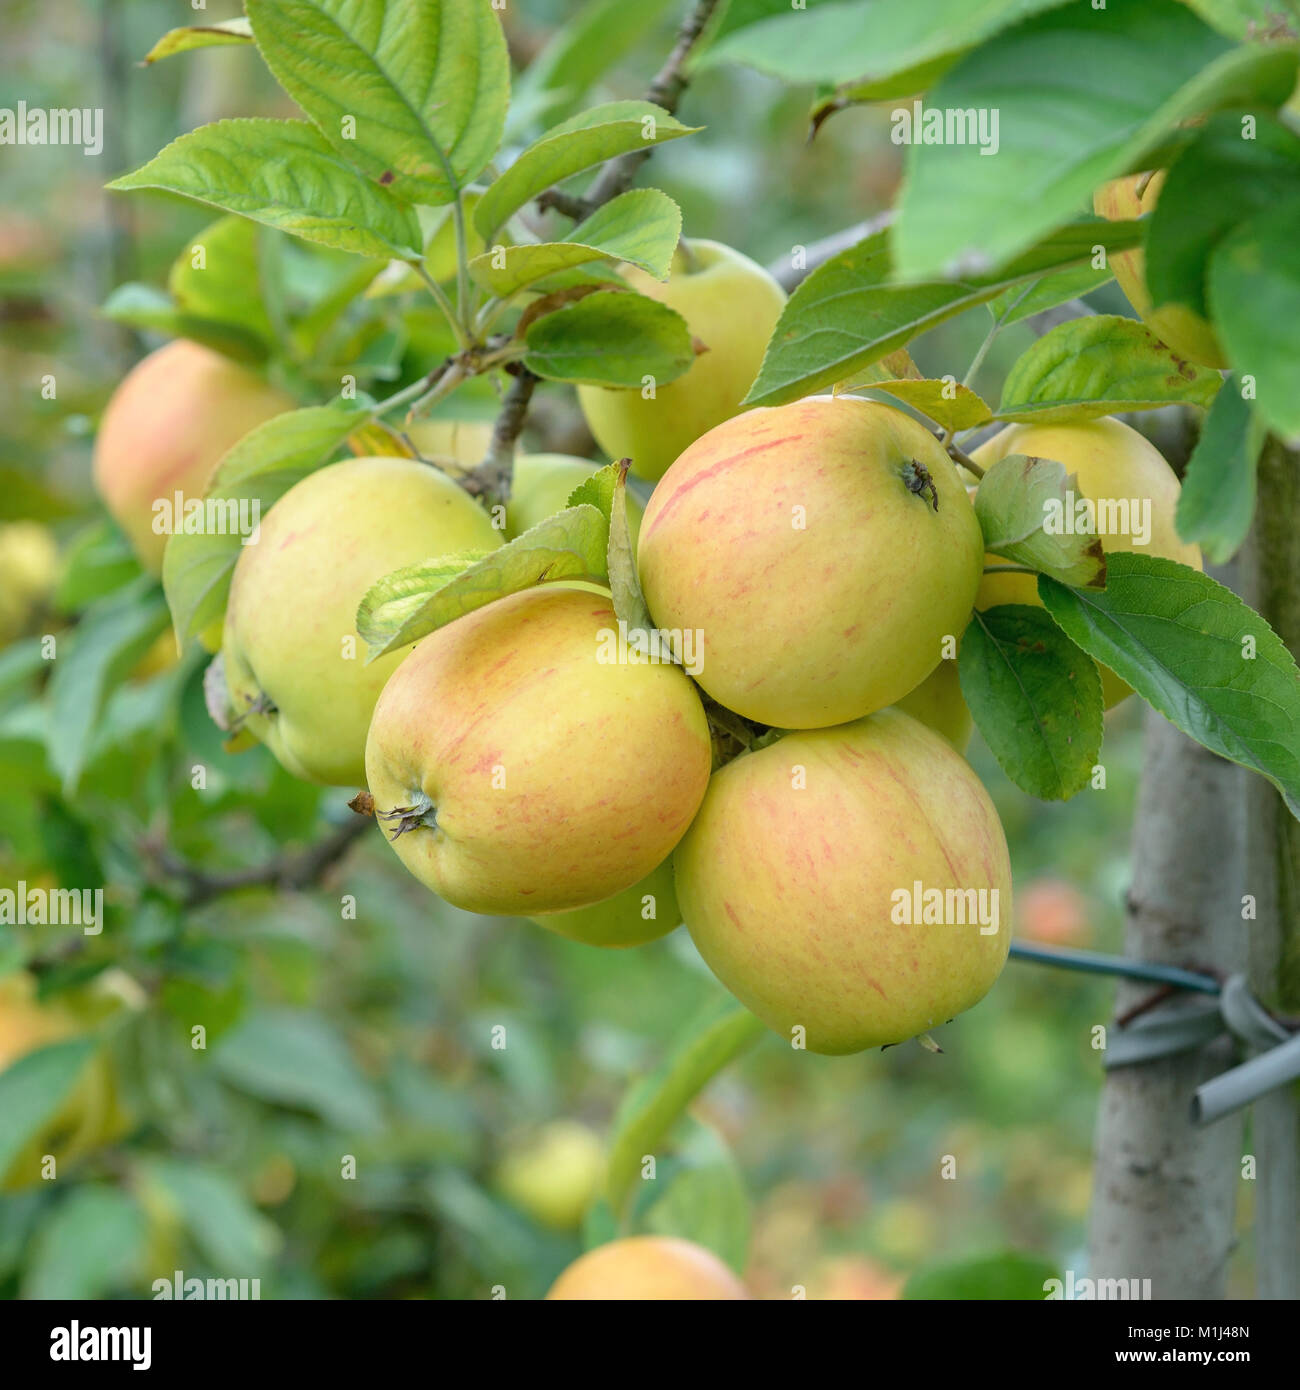 Apple (Malus Domestica GOLDPARMANE), Apfel (Malus domestica GOLDPARMÄNE) Stock Photo